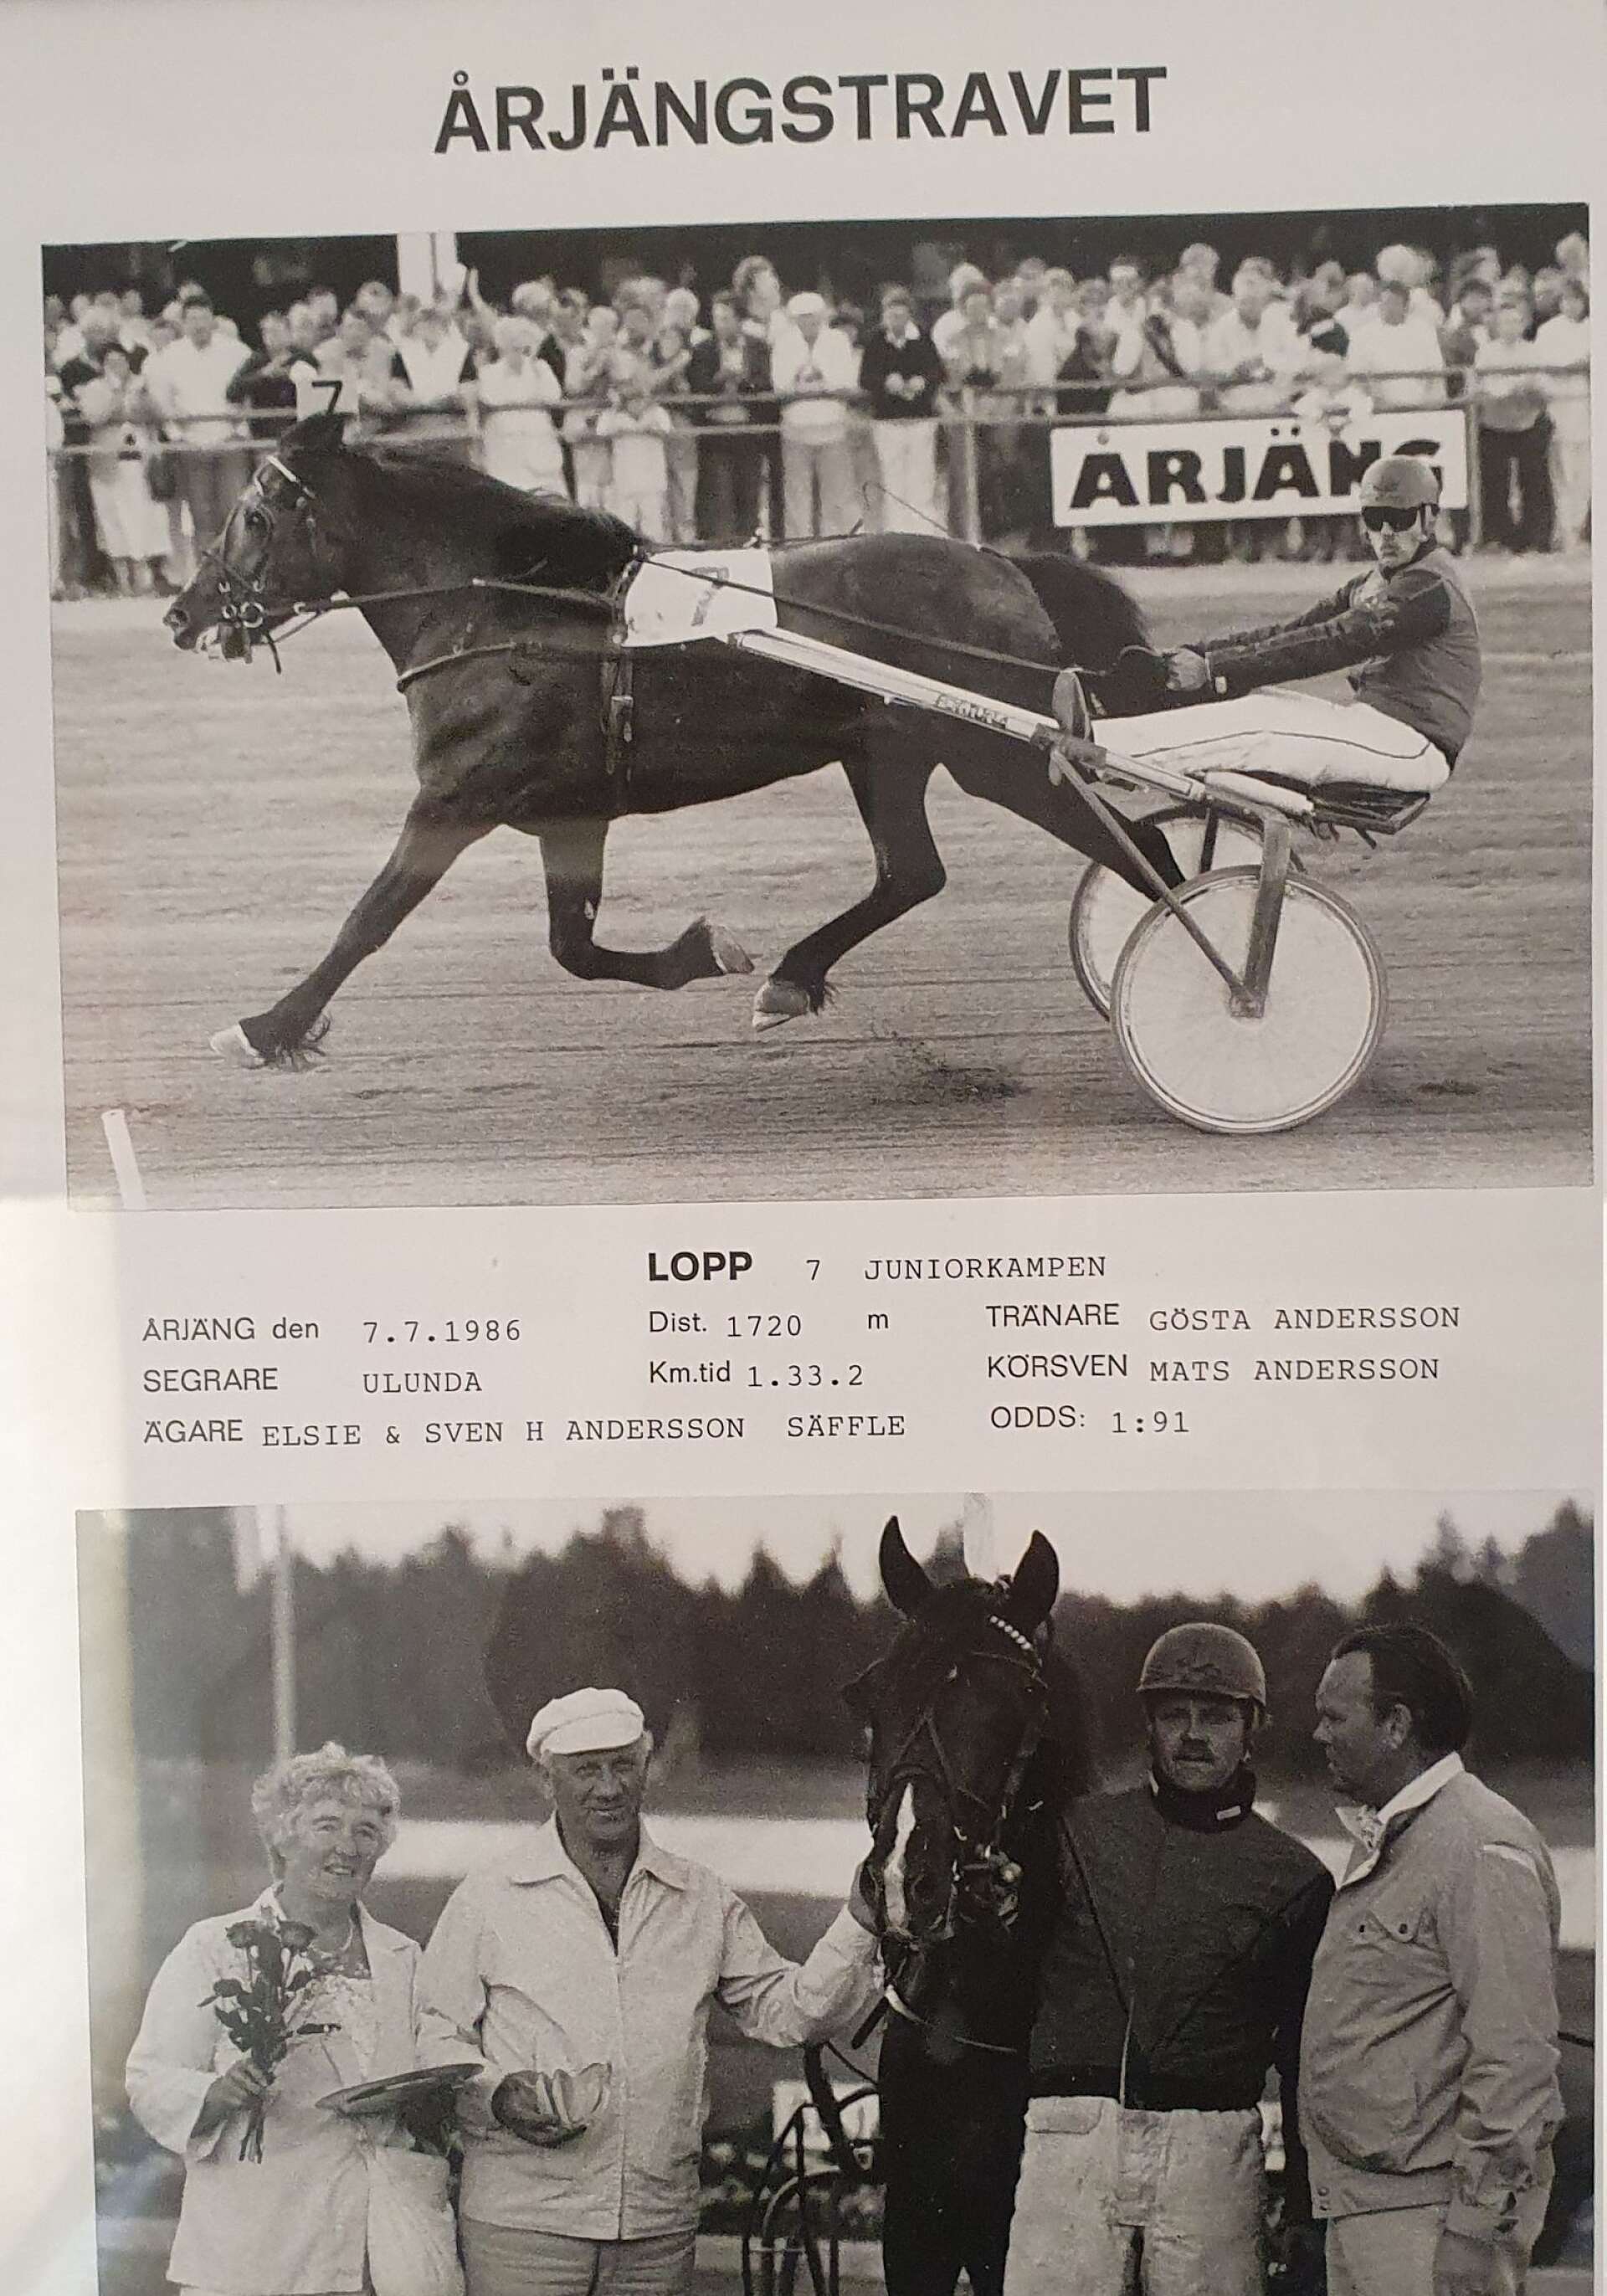 Klassisk segrarbild från en Ulundaseger i Årjäng. Äagarna Elsie och Sven Andersson samt Mats Andersson som körsven. Mats pappa Gösta står som tränare